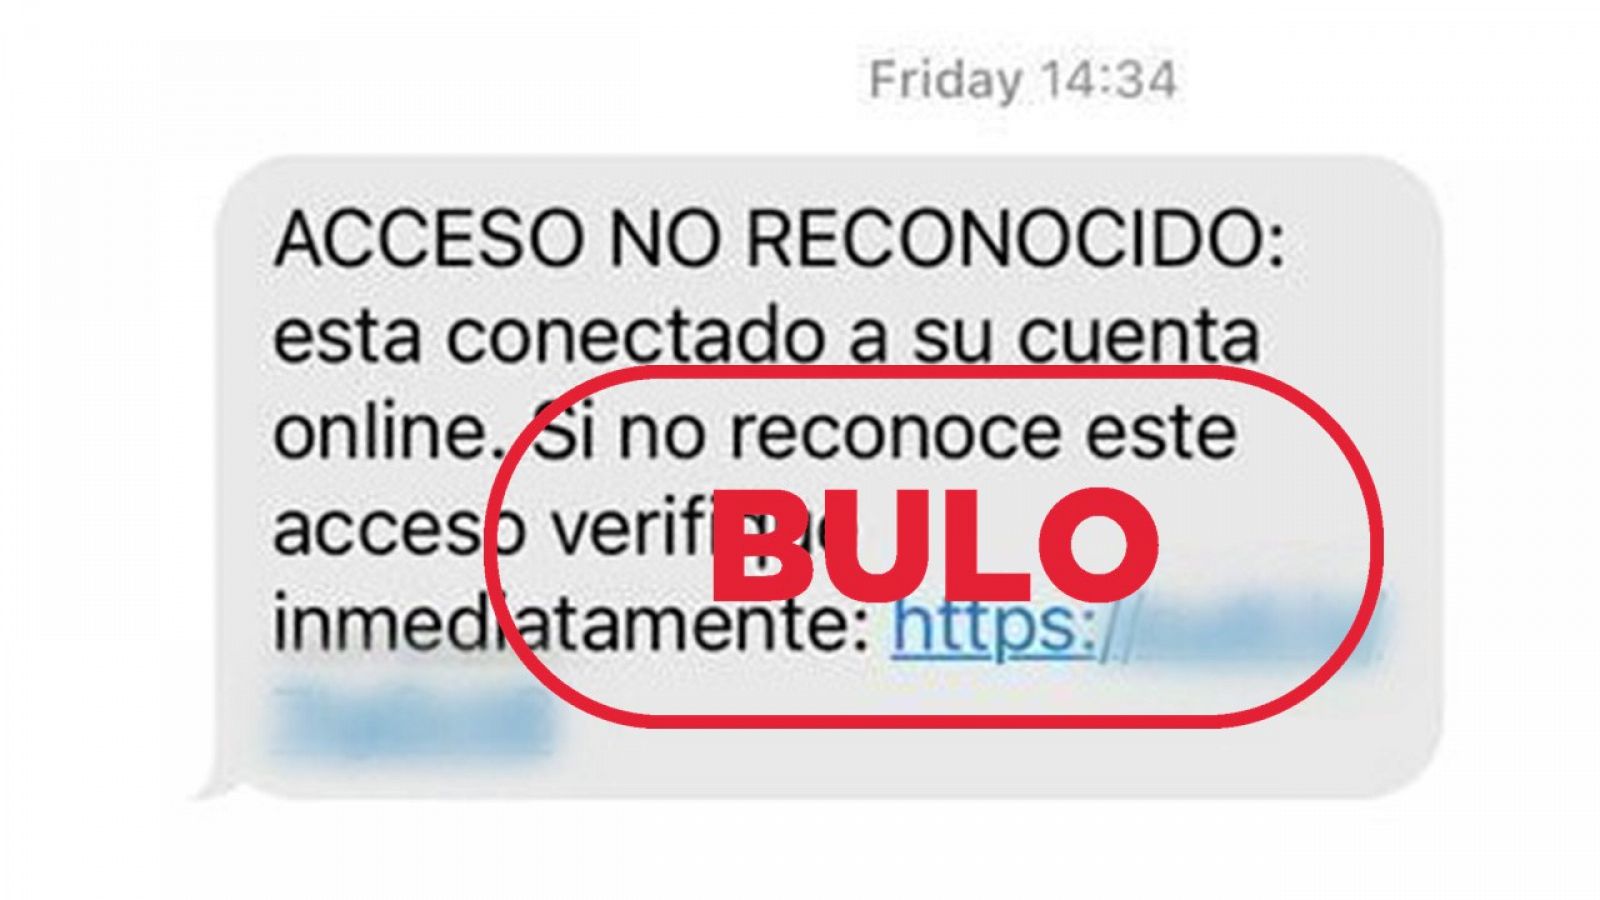 Mensaje sms que suplanta al Banco Santander, con el sello bulo en rojo de VerificaRTVE